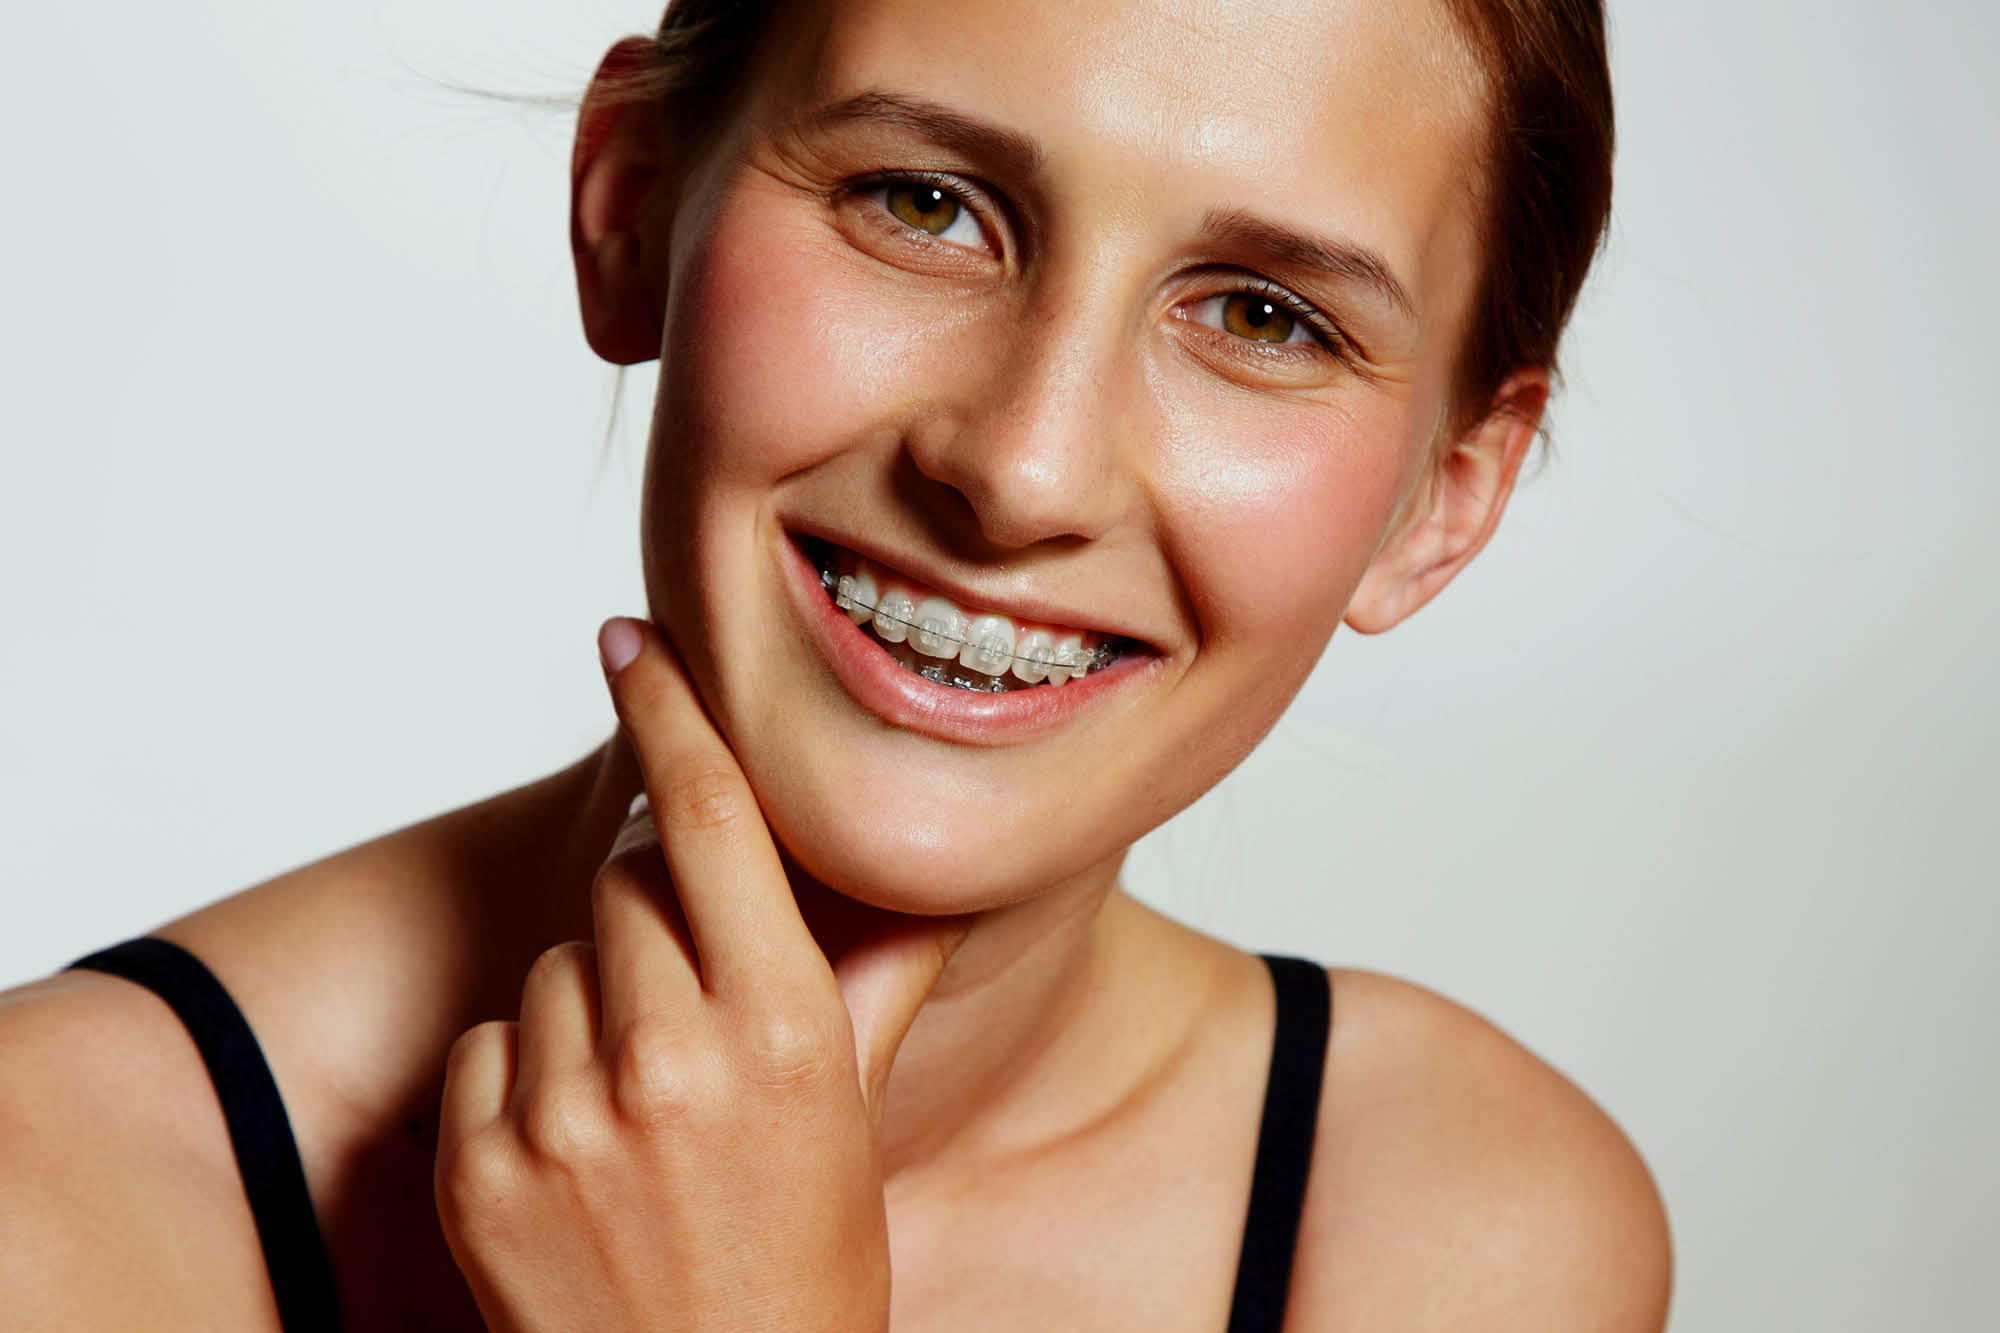 Ortodoncja dla dorosłych: nigdy nie jest za późno na piękny uśmiech